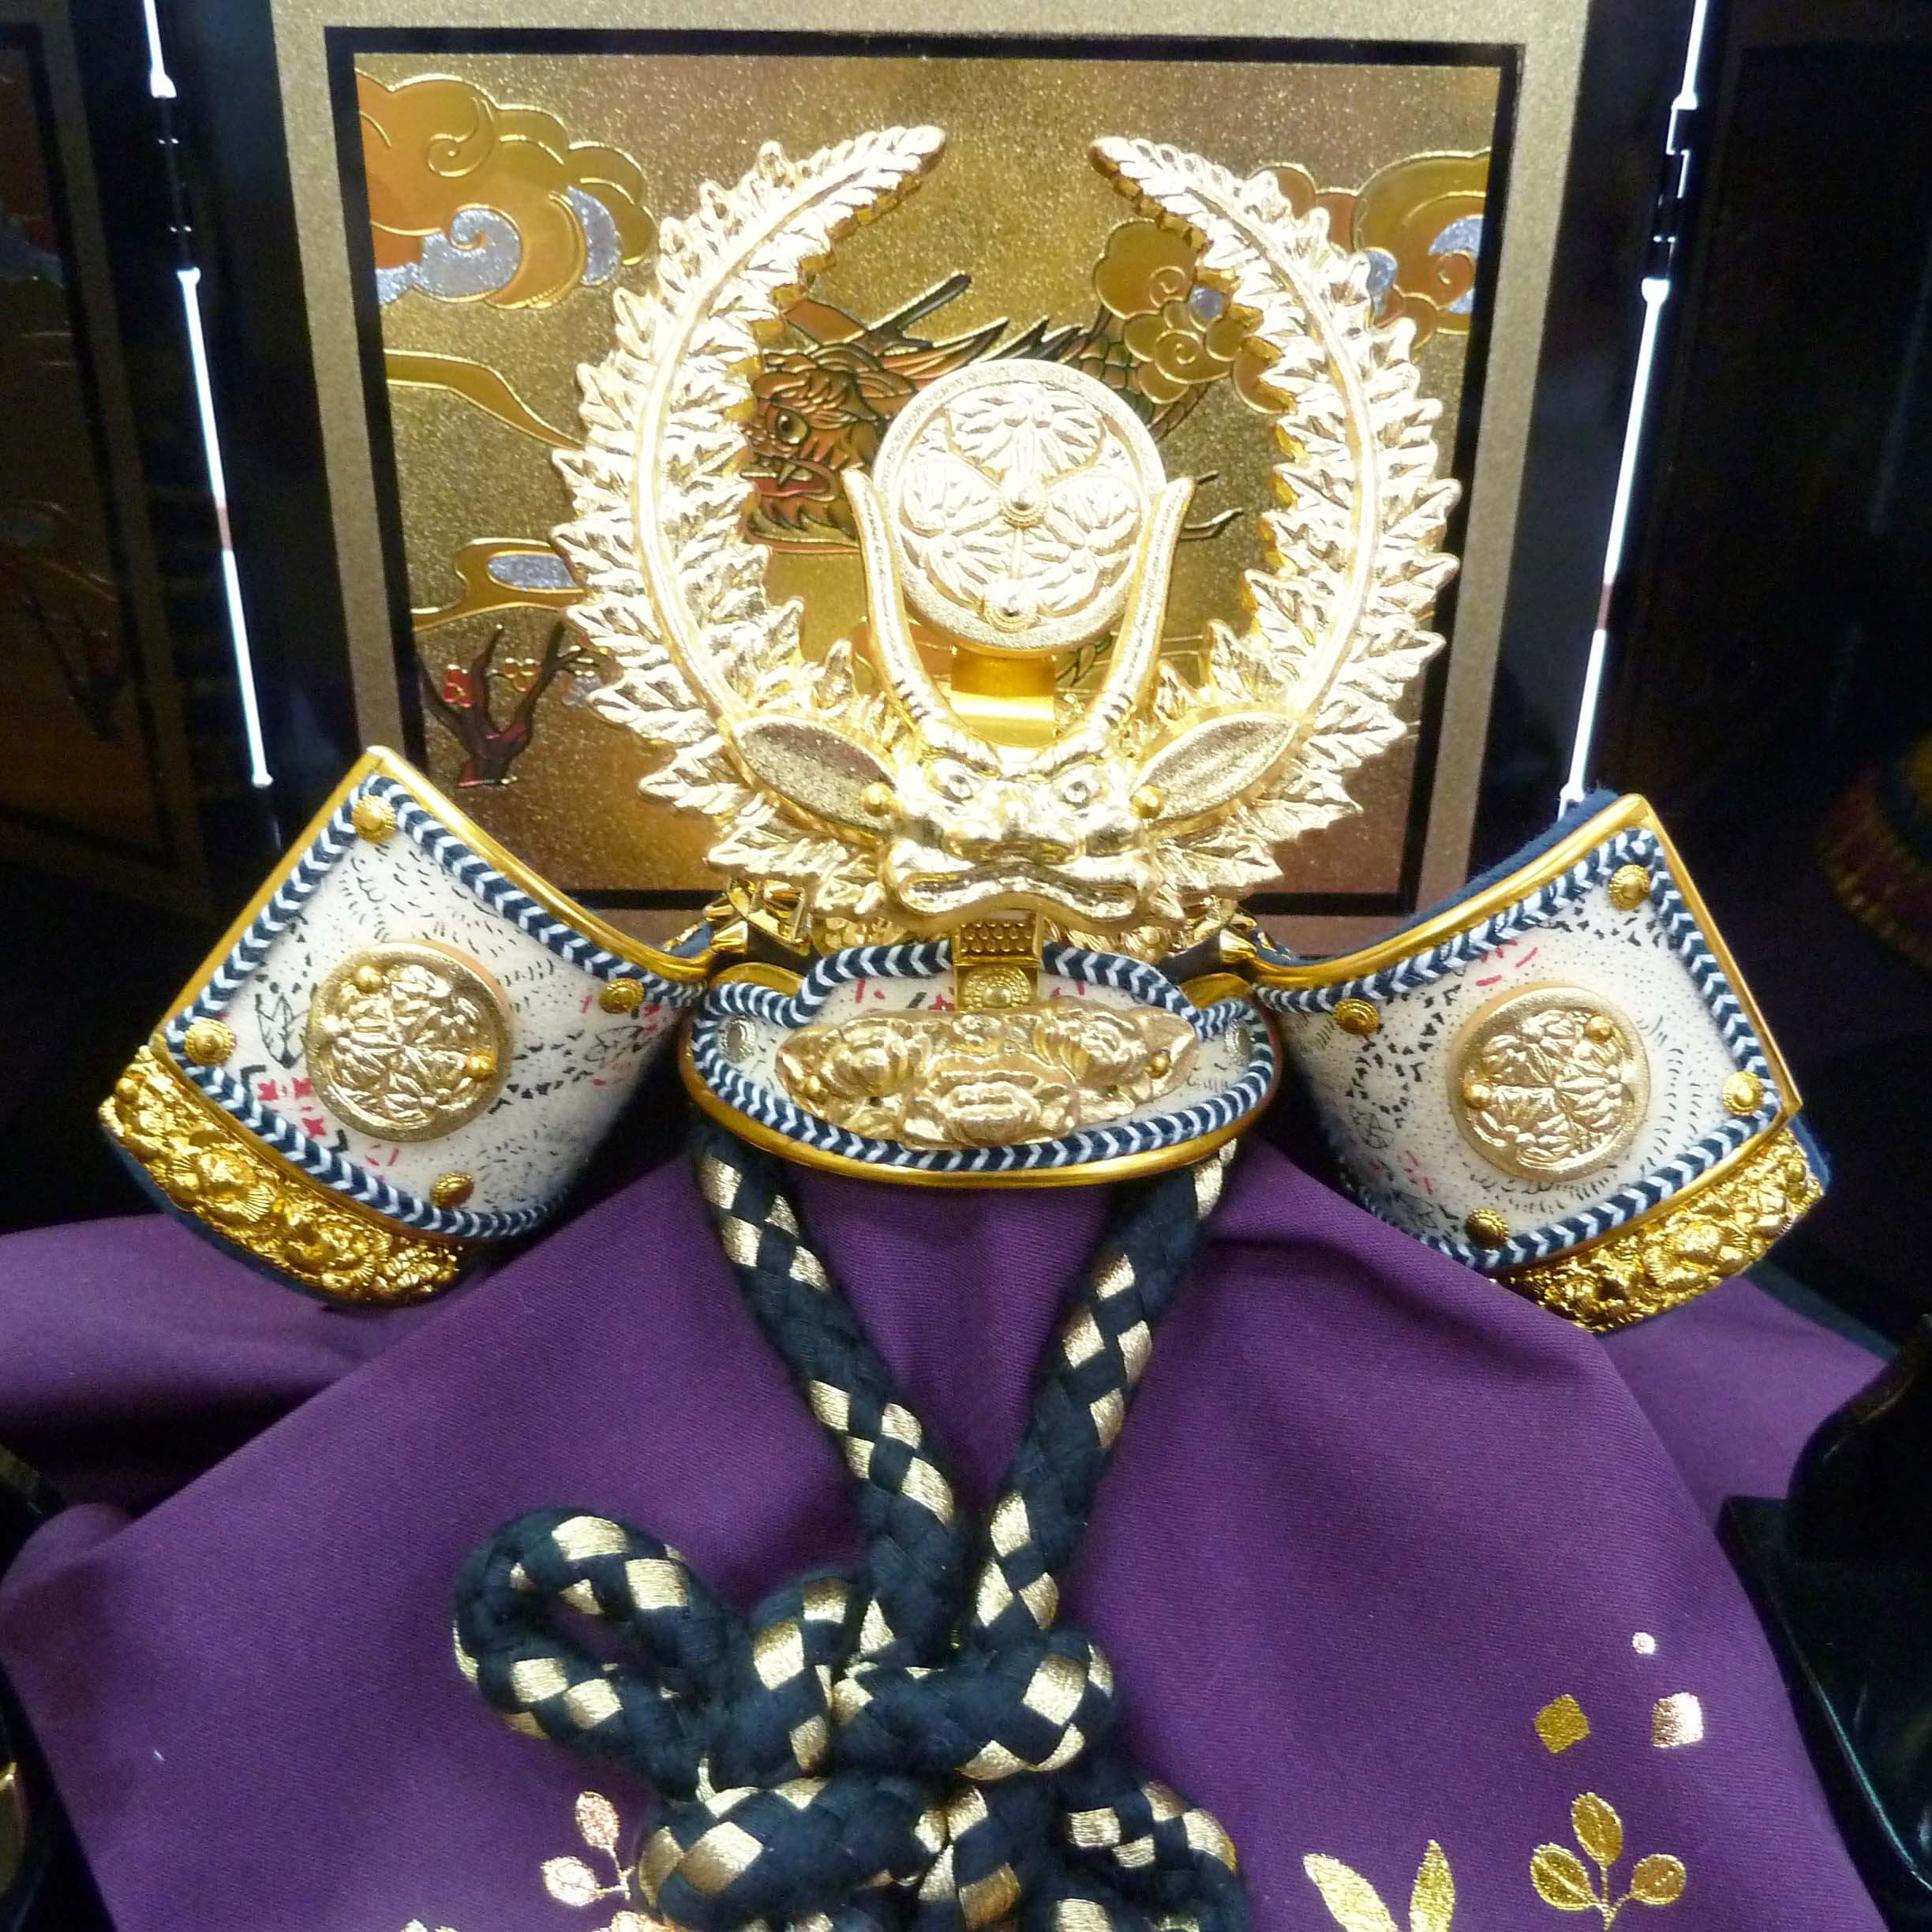 獅子歯朶前立てと三つ葉葵の家紋が特徴の徳川家康兜